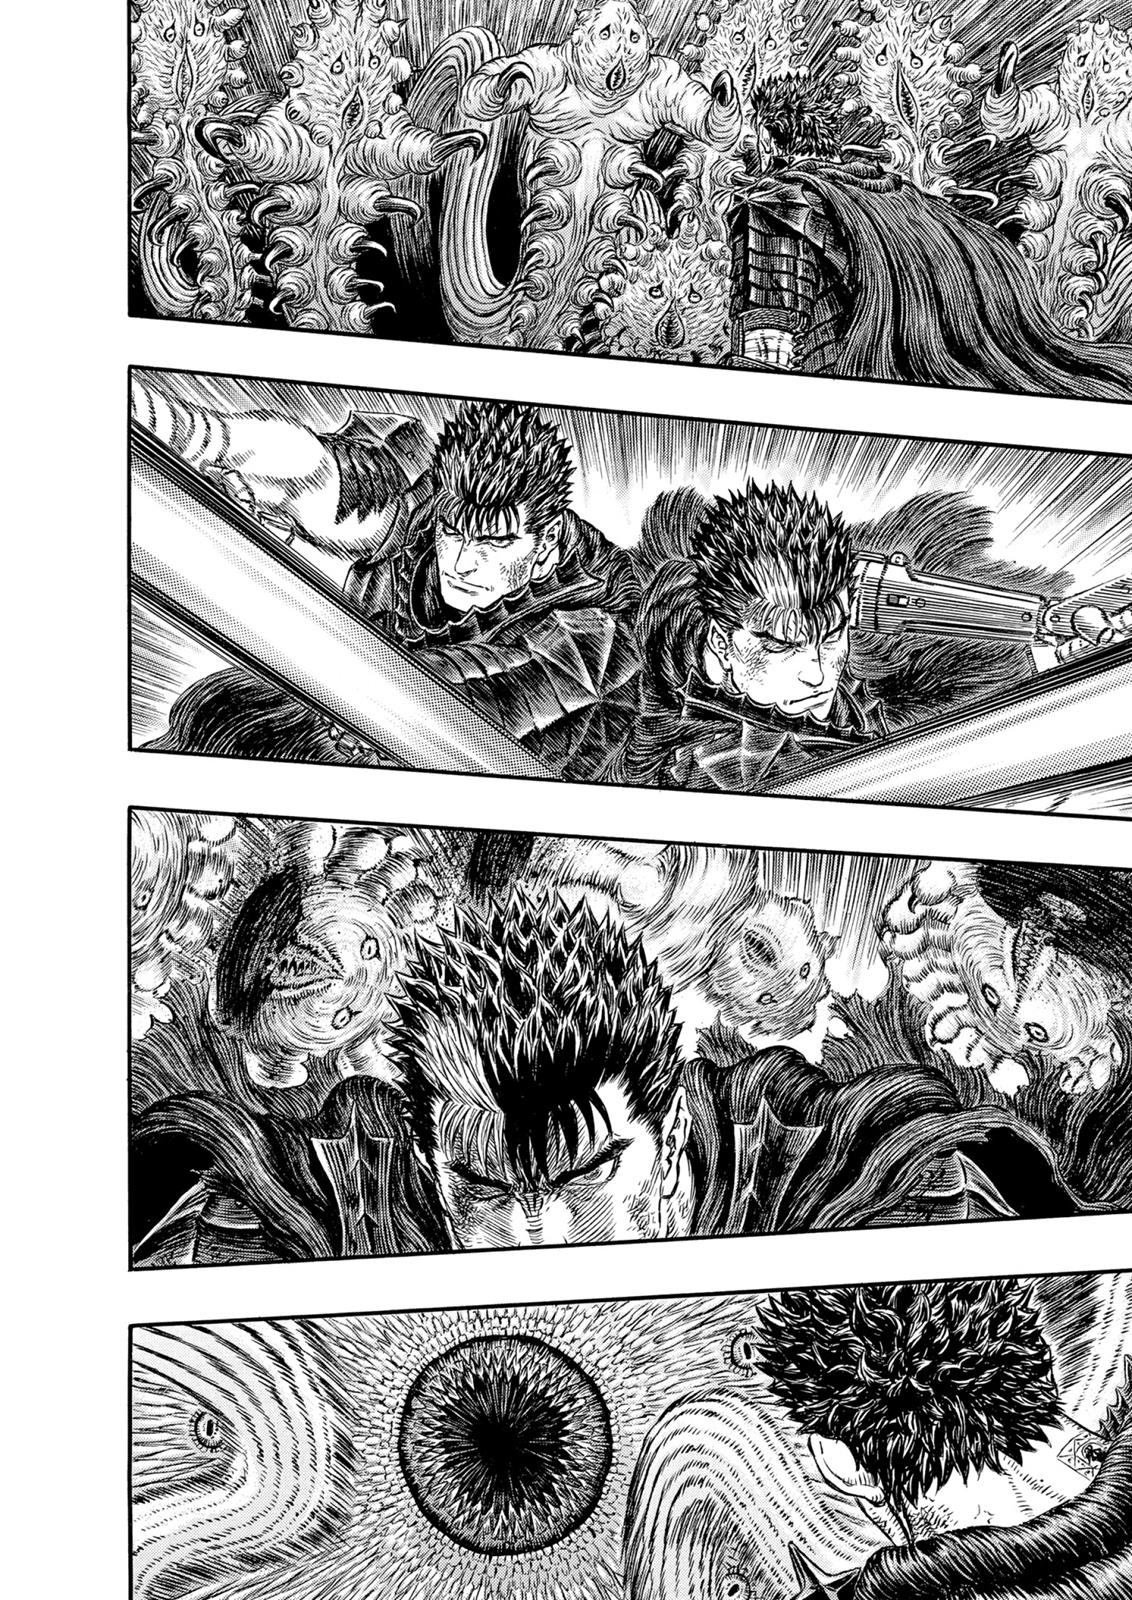 Berserk Manga Chapter 314 image 15